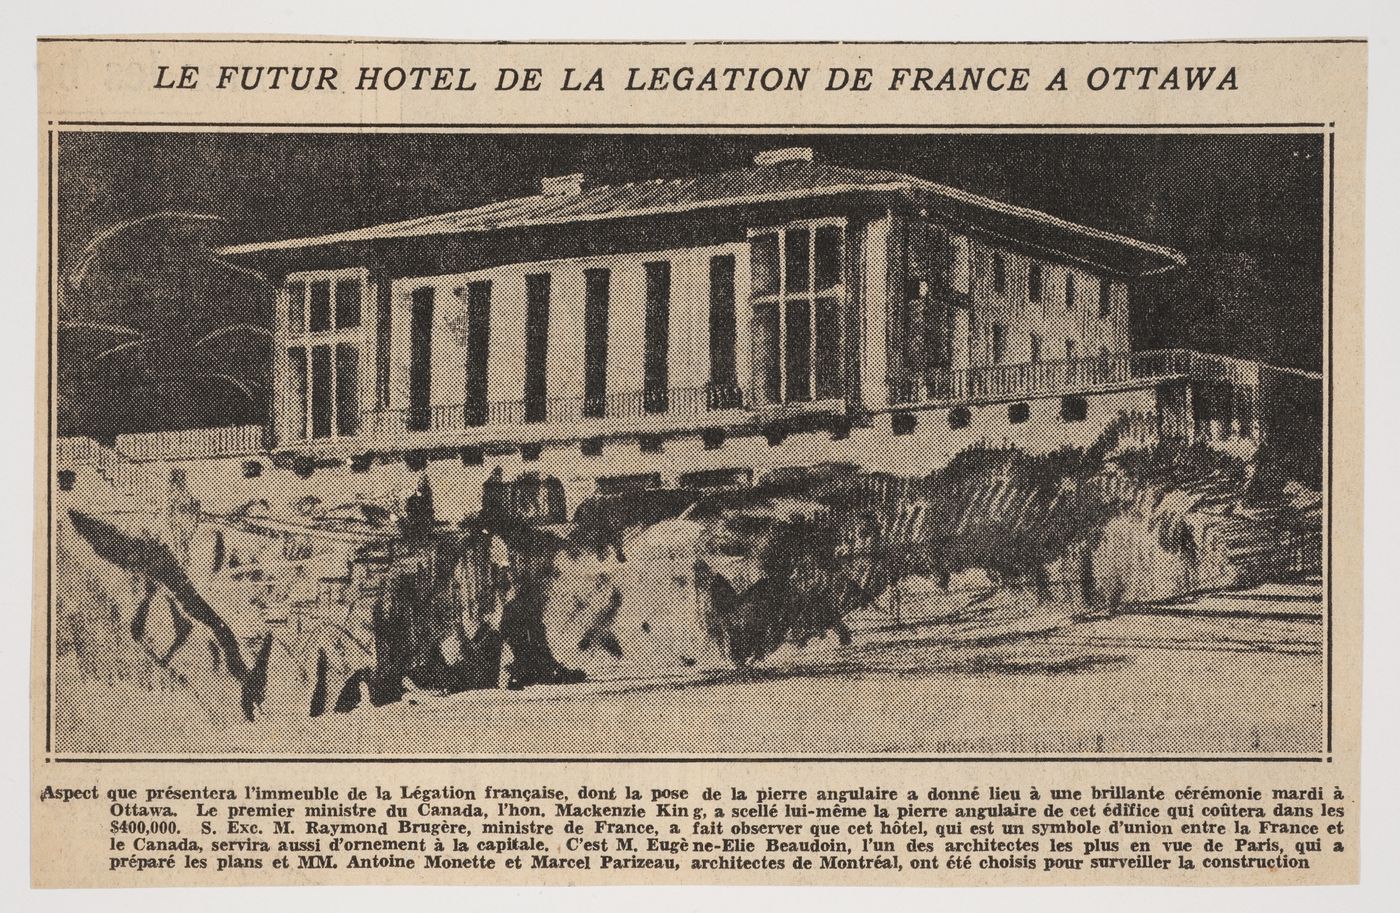 Coupure de presse au sujet de la pose de la pierre angulaire de l'immeuble de la Légation de la France, Ottawa, Ontario